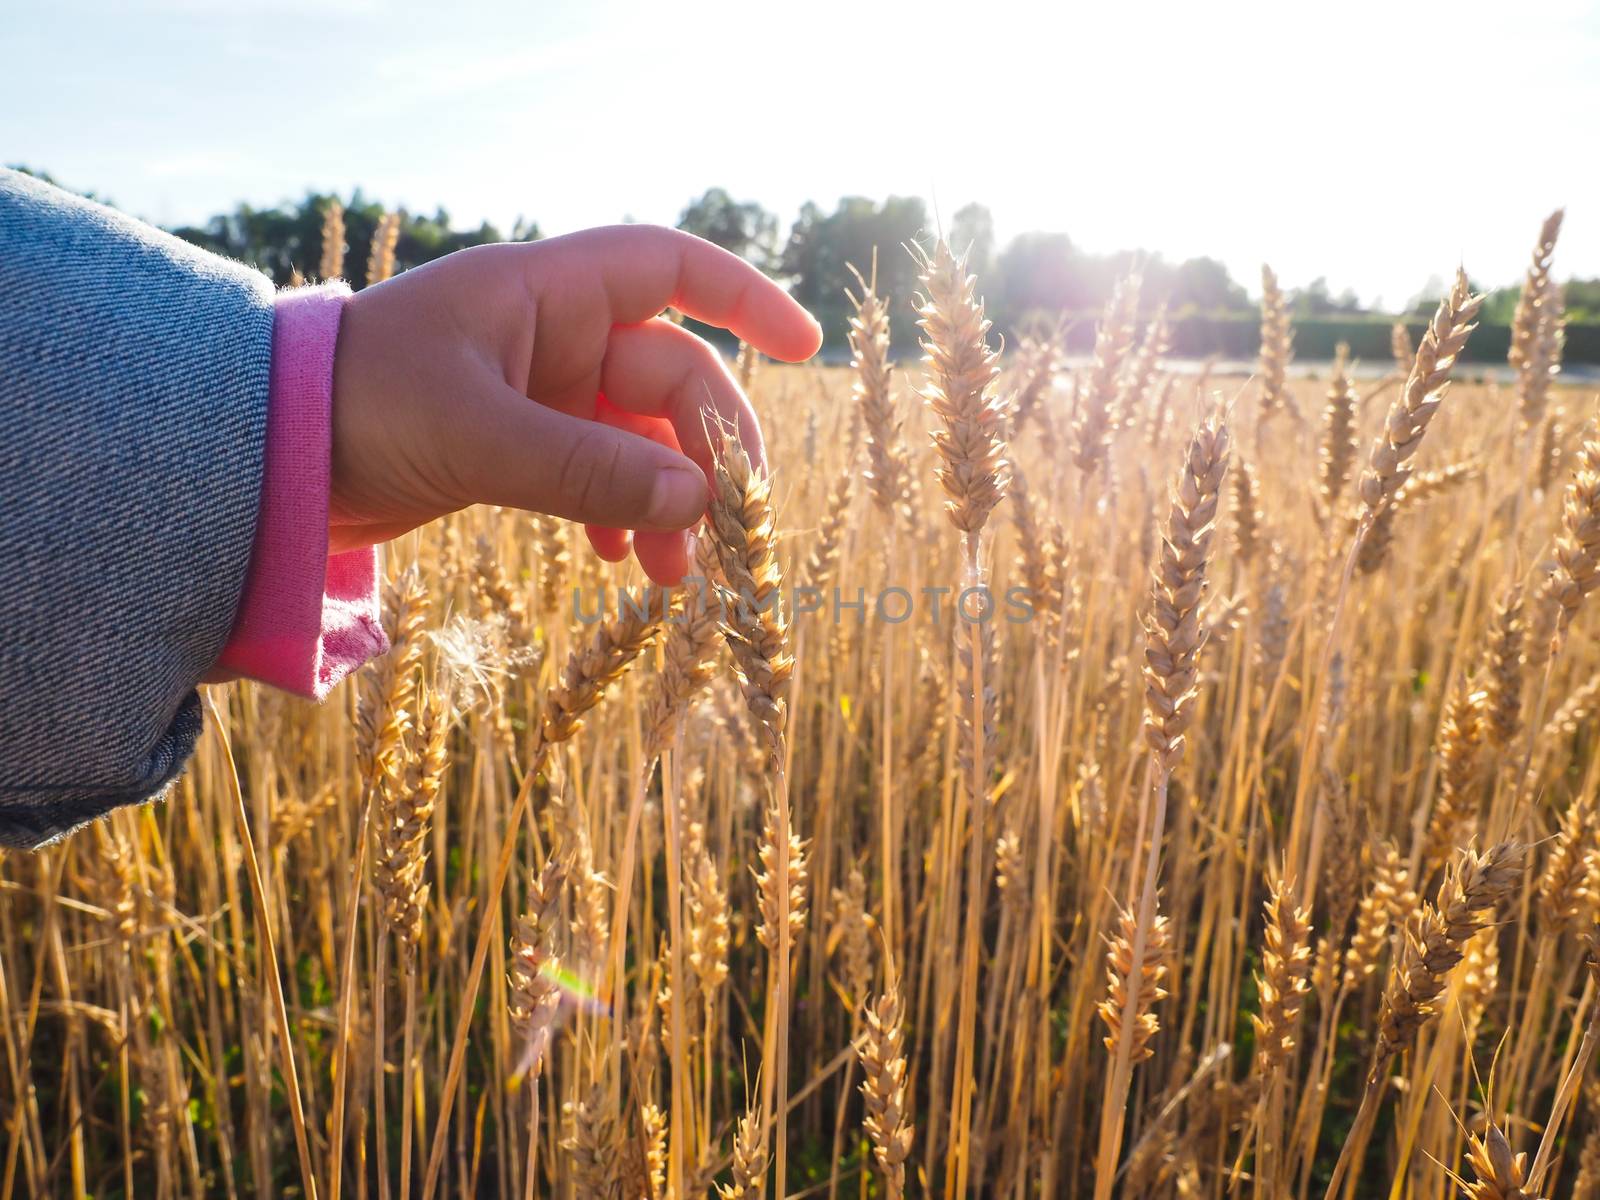 Child touching wheat grain by Arvebettum